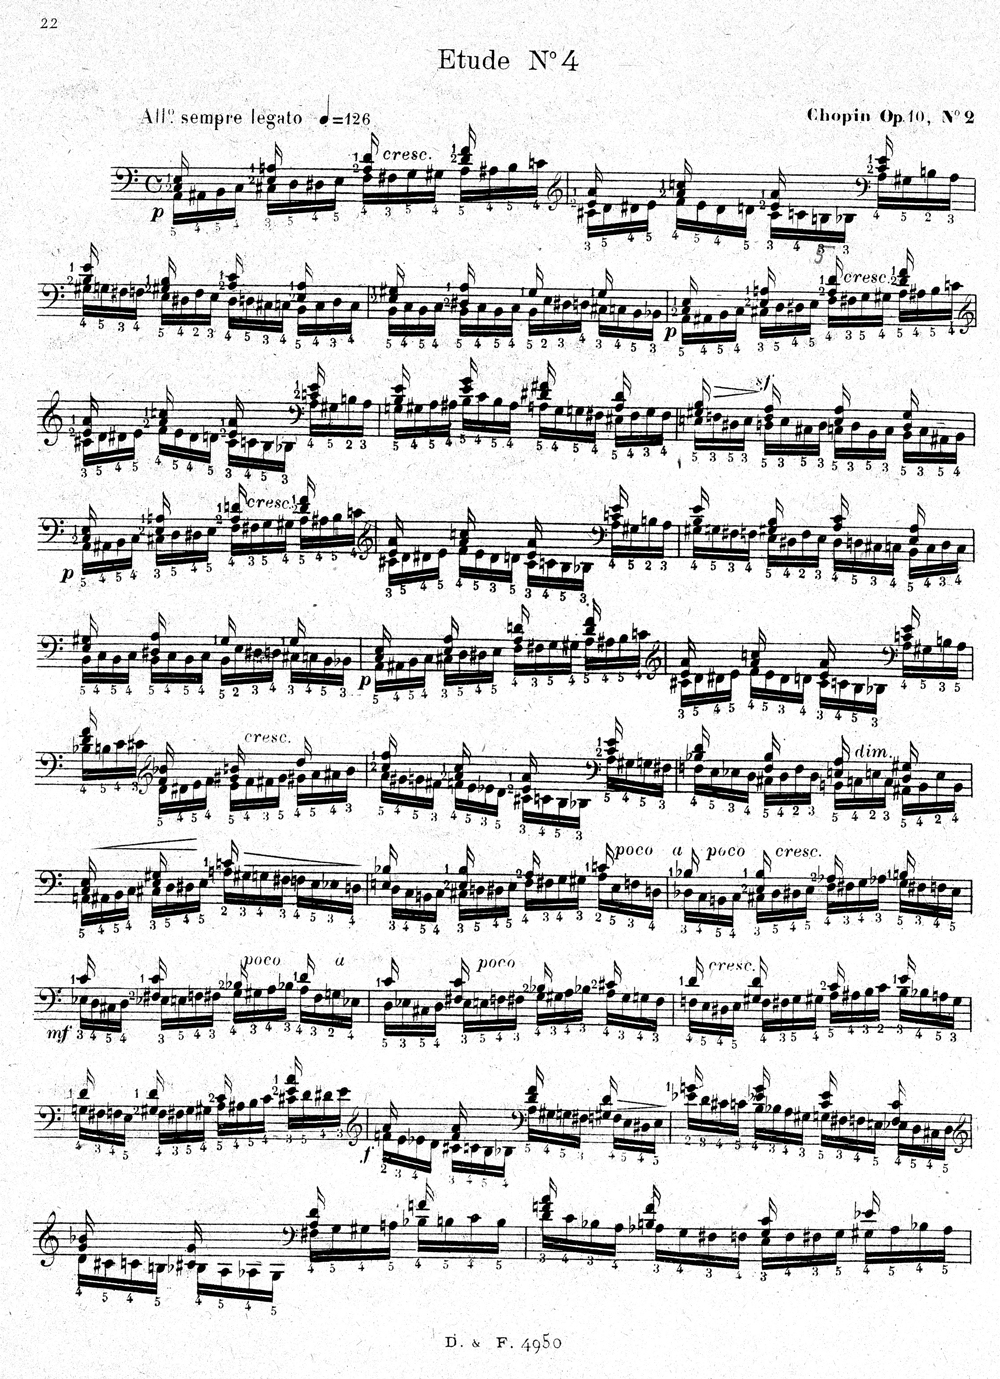 Violon enfant avancé fait main 1/4 violon violon fractionné violon